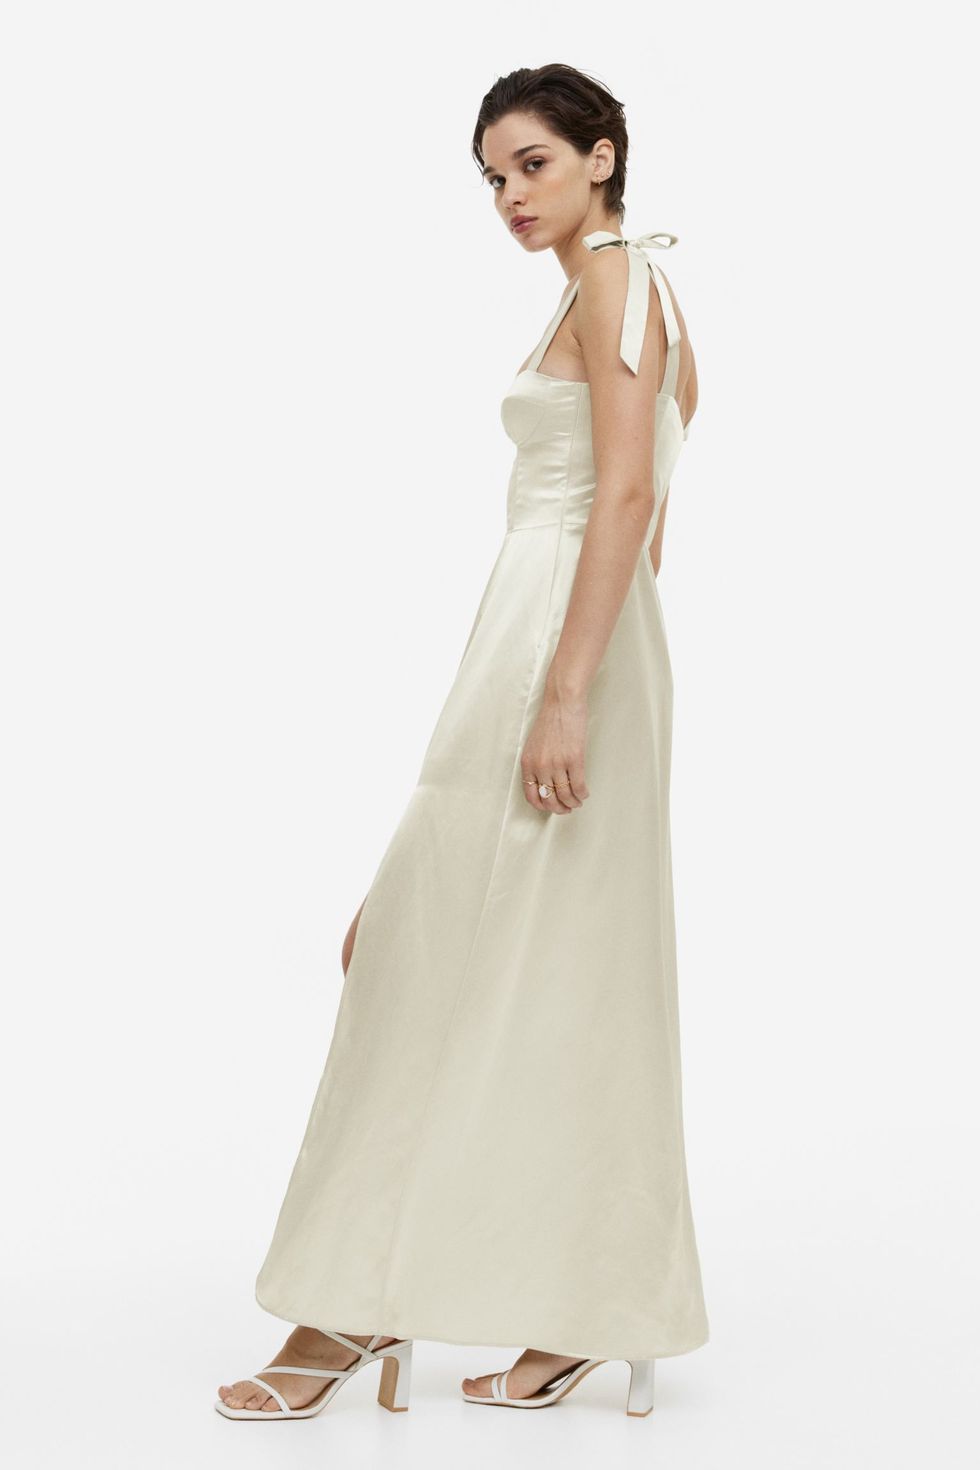 vestido de novia 39 € de H&M que ha colapsado la logística española y sueca